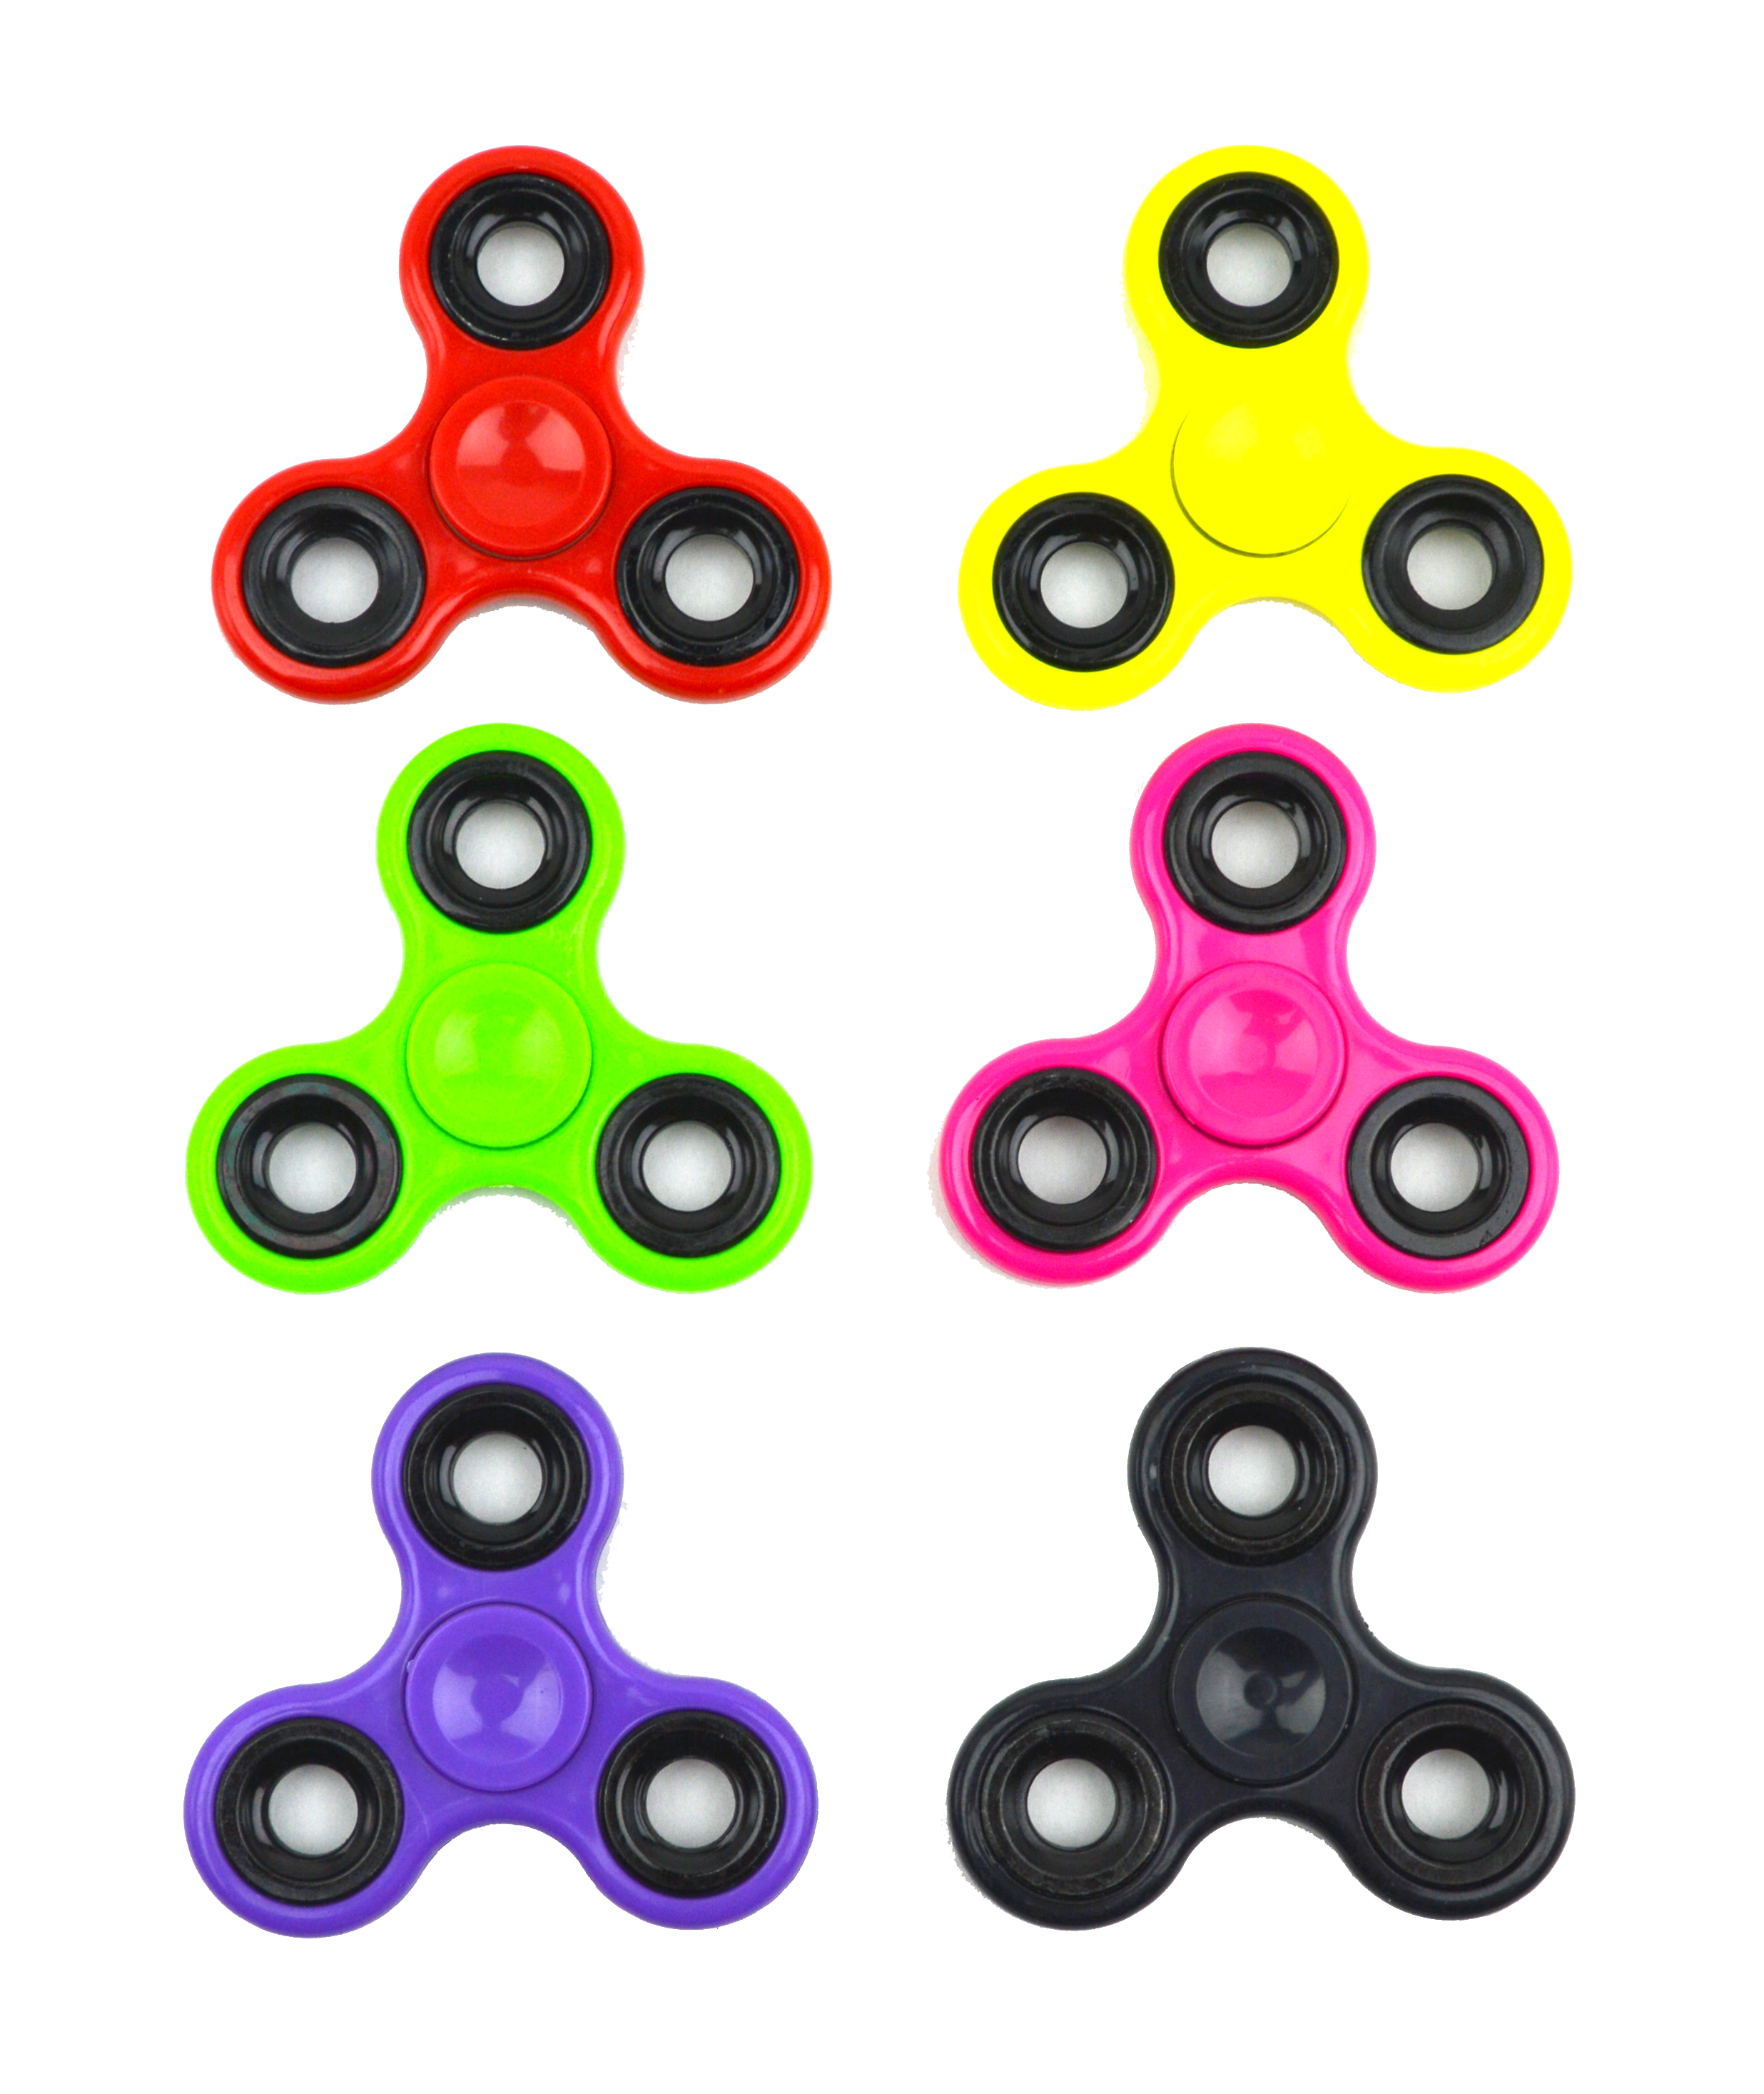 wholesale, wholesale fidget spinners, fidget spinners for kids, cheap fidget spinners, fidget spinners for kids